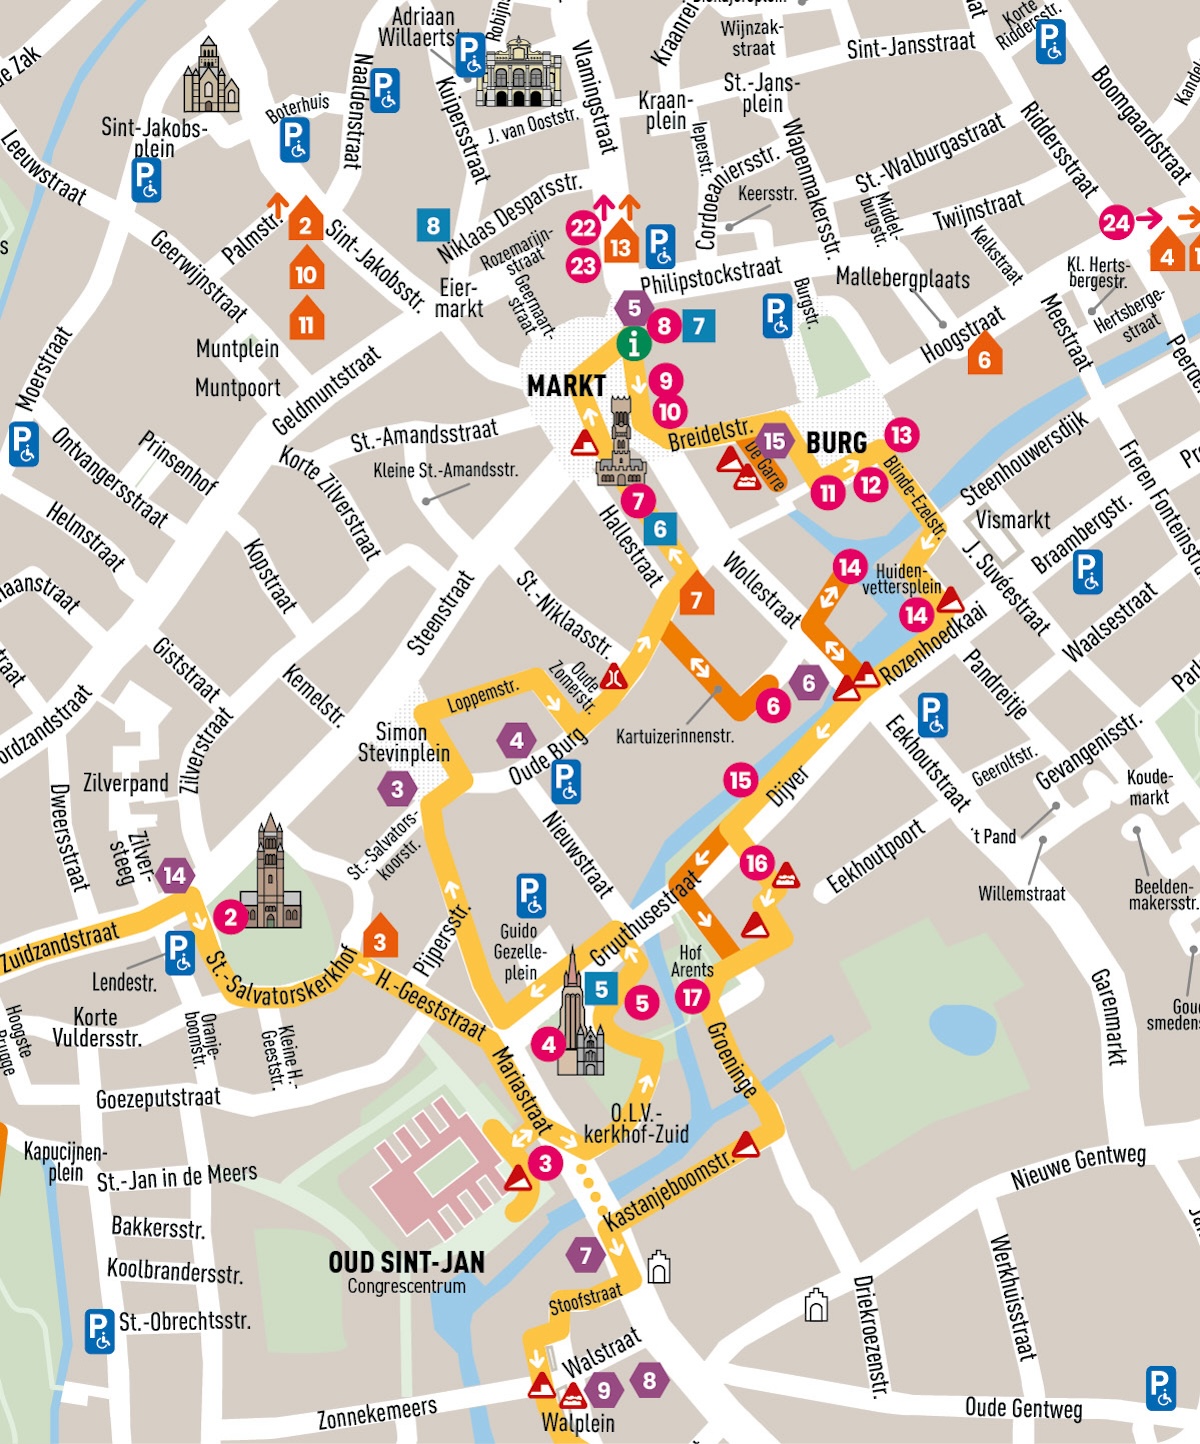 Detailkarte 2 eines Teils der Wanderstrecke. Die Karte ist wie folgt begrenzt: Königliches Stadttheater im Norden, Groenerei im Osten, Walplein im Süden, Zuidzandstraat im Westen.